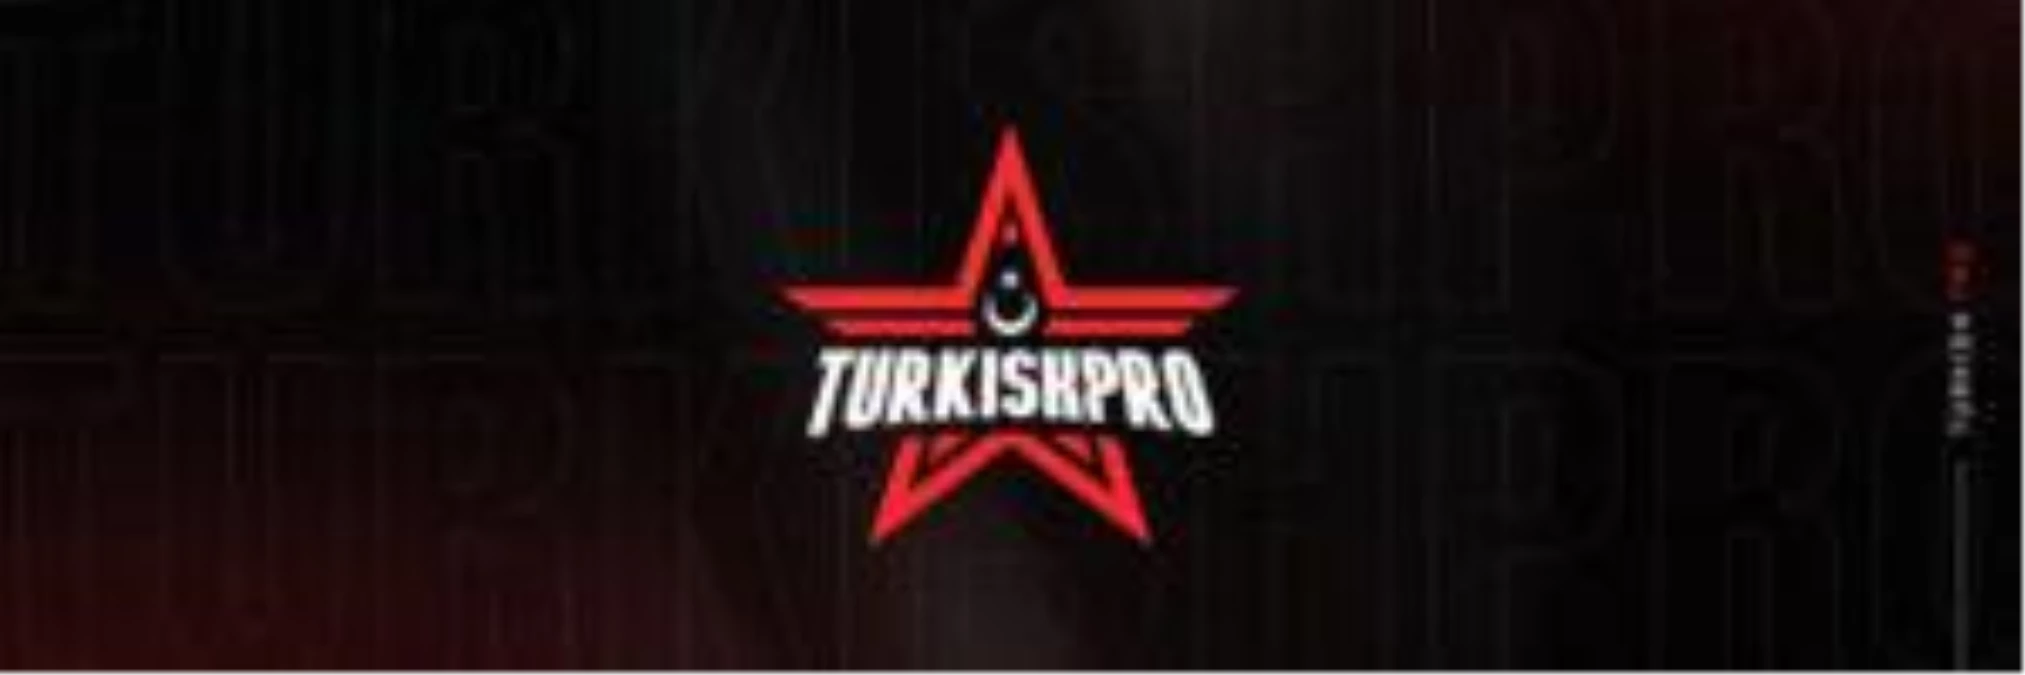 Turkish Pro Topluluk Turnuvası 3 yarı finalistleri belli oldu!